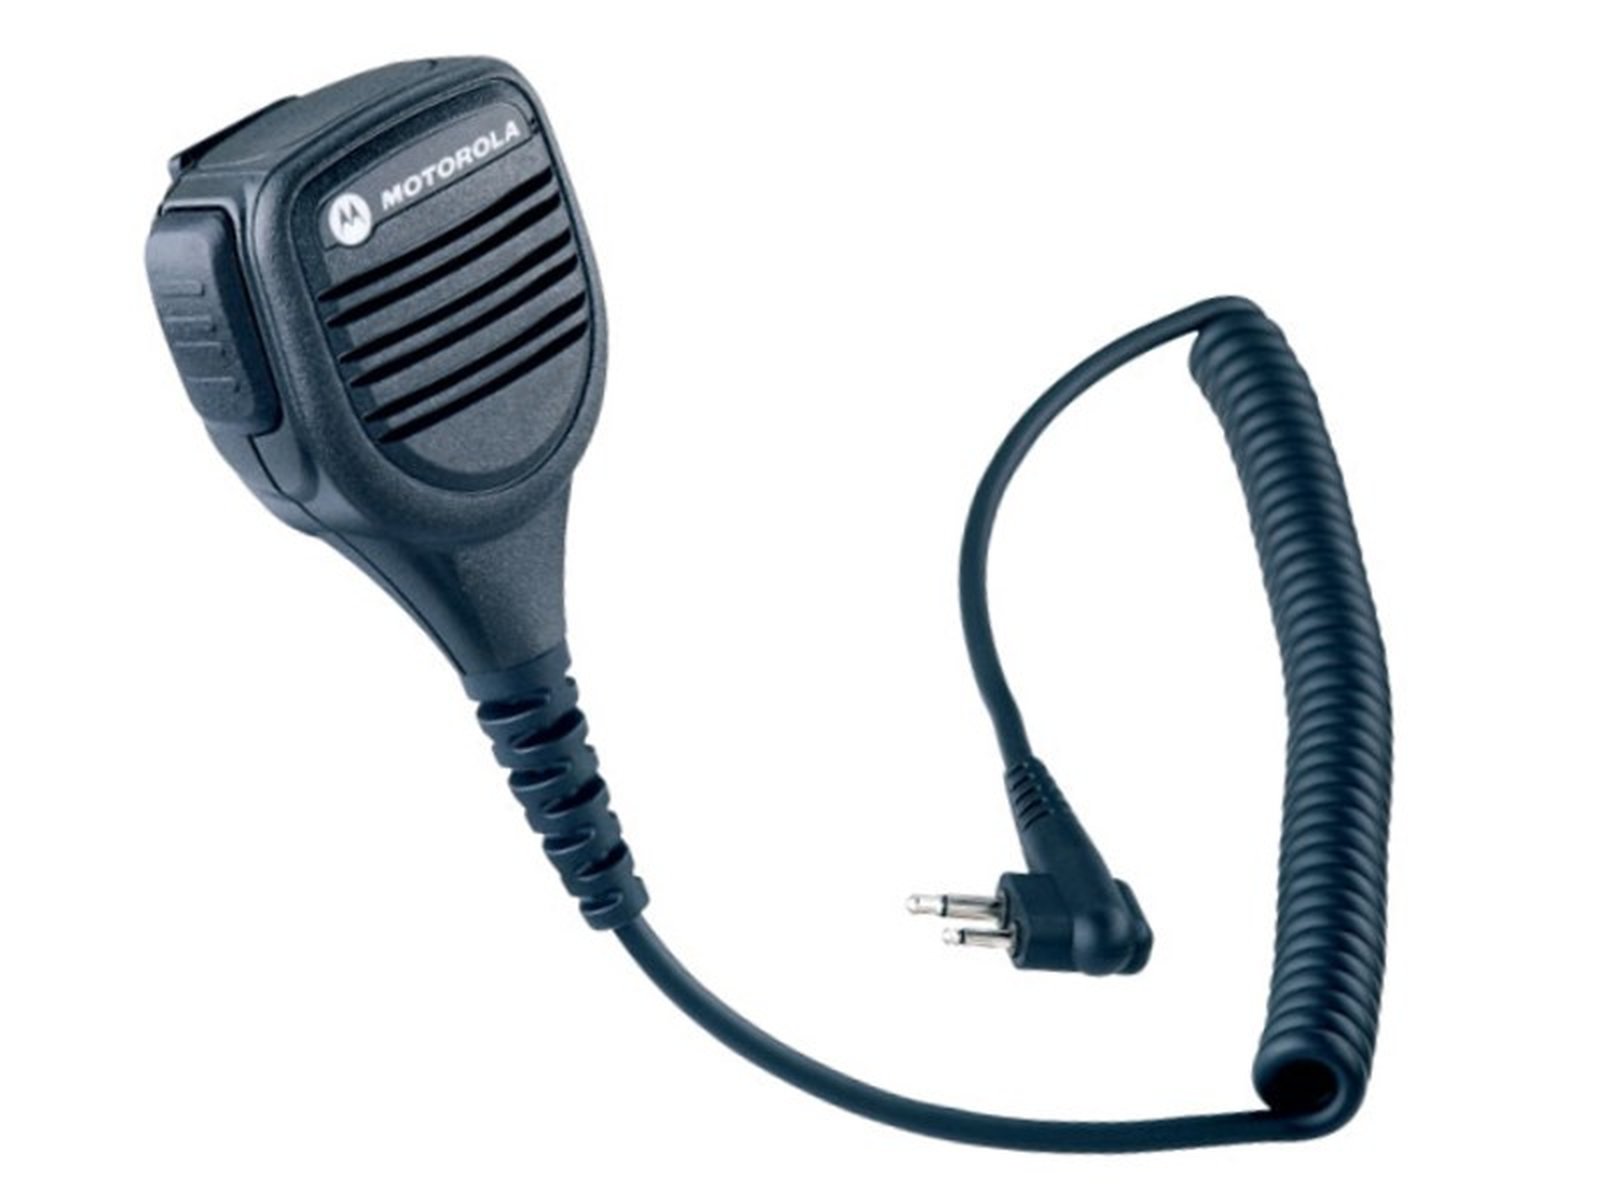 Motorola PMMN4013A Lautsprechermikrofon